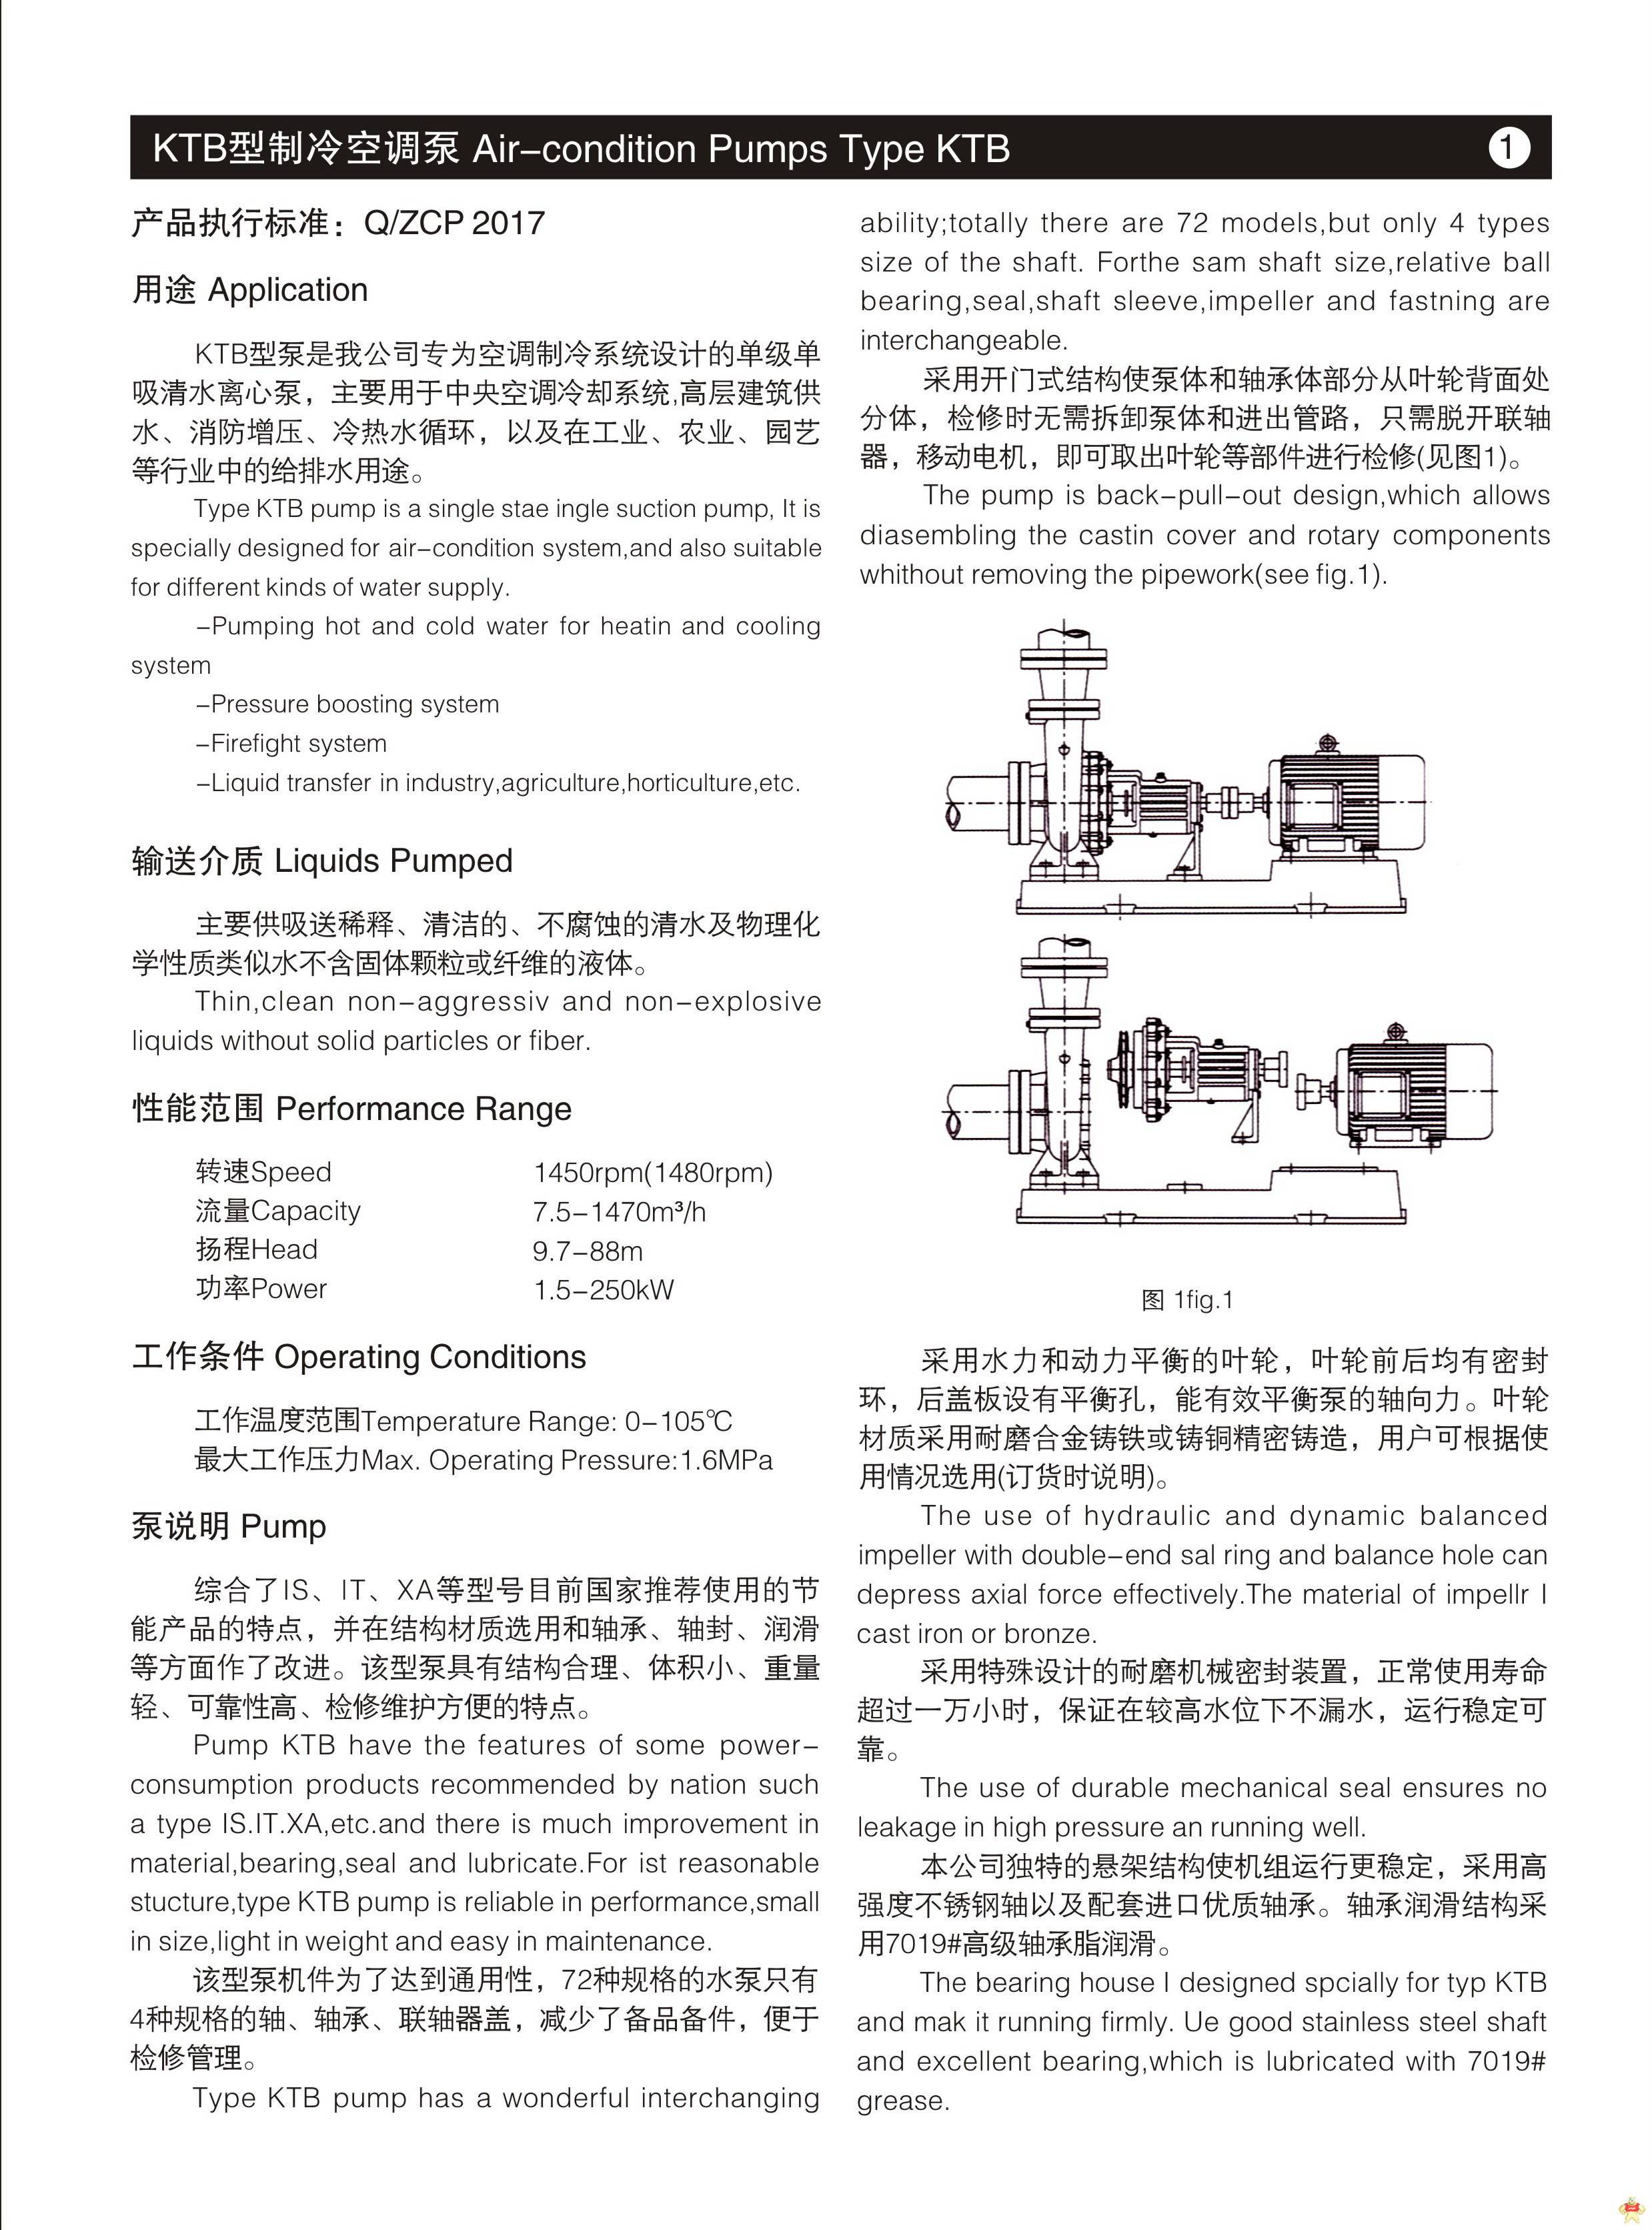 冷却塔循环水泵 空调循环泵 电动抽水机KTB125-100-410B广州中超 冷却塔循环水泵,空调循环泵,电动抽水机